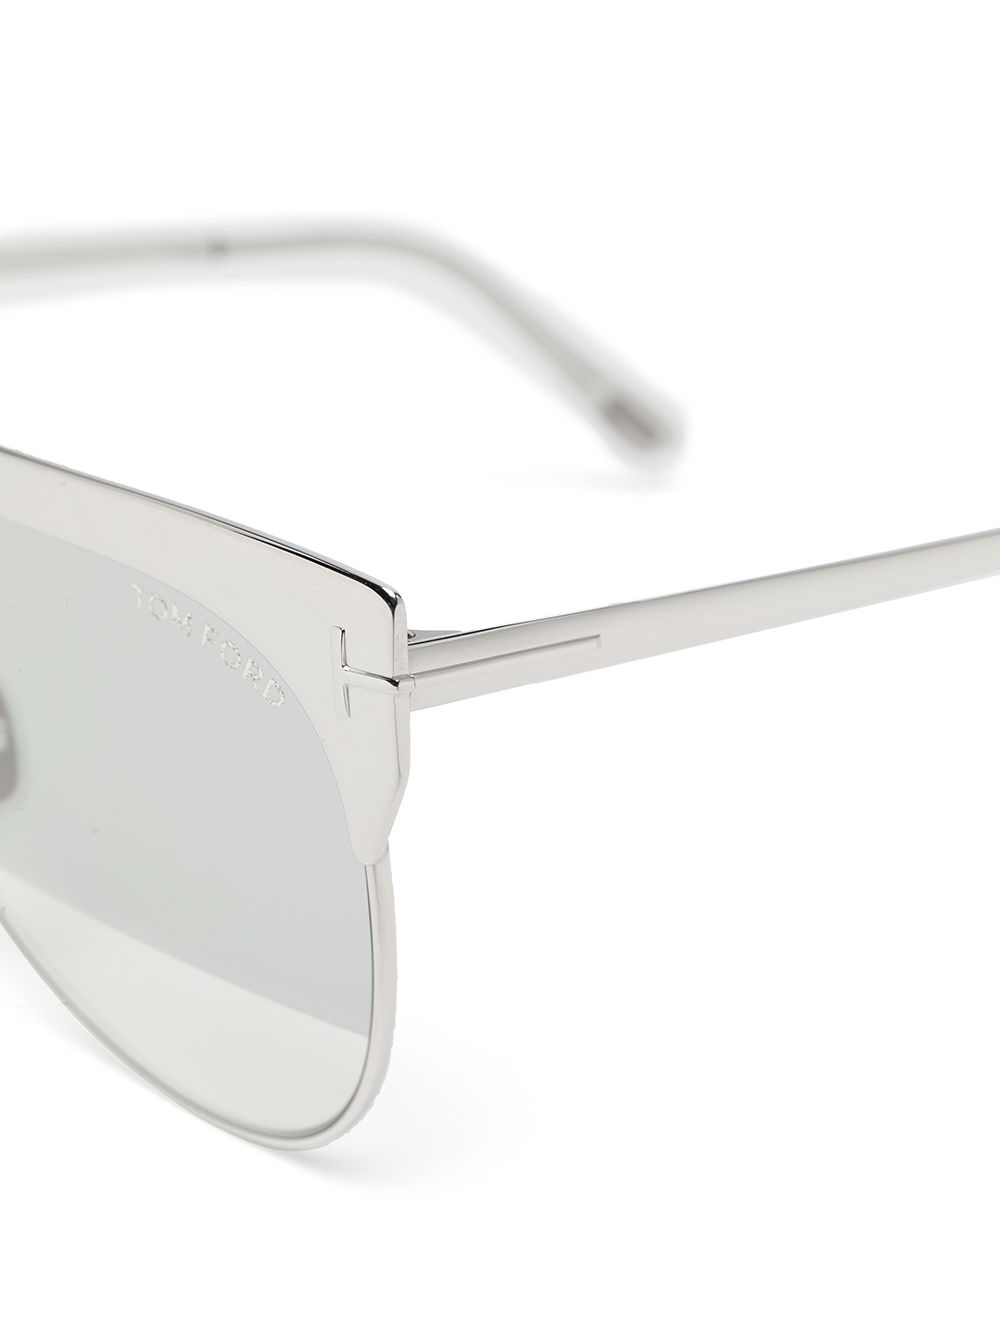 фото Tom ford eyewear солнцезащитные очки с зеркальными линзами